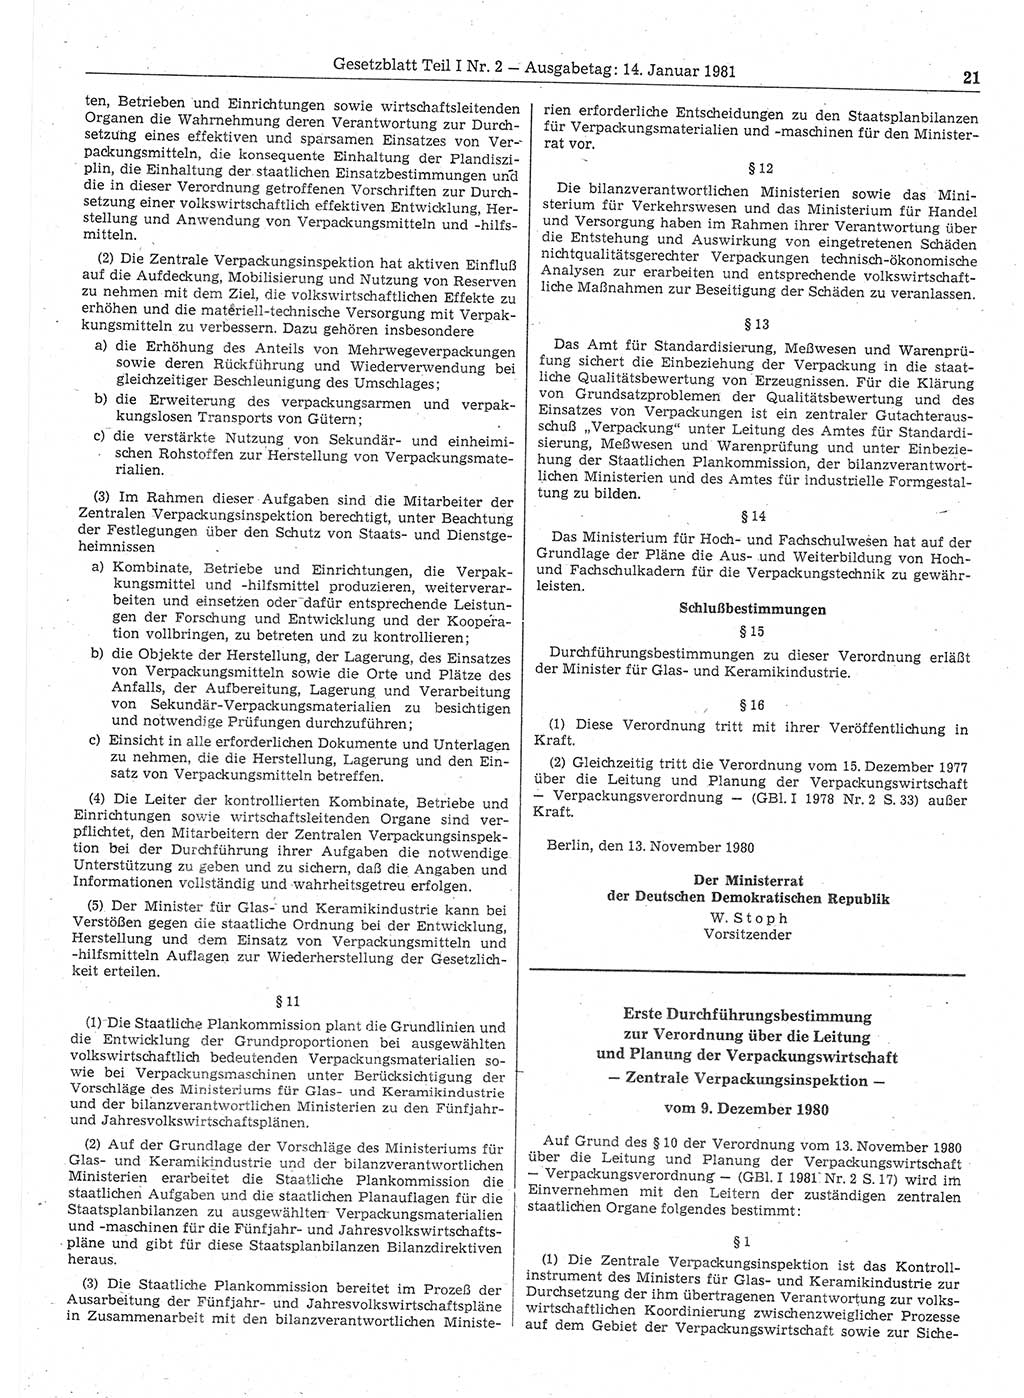 Gesetzblatt (GBl.) der Deutschen Demokratischen Republik (DDR) Teil Ⅰ 1981, Seite 21 (GBl. DDR Ⅰ 1981, S. 21)